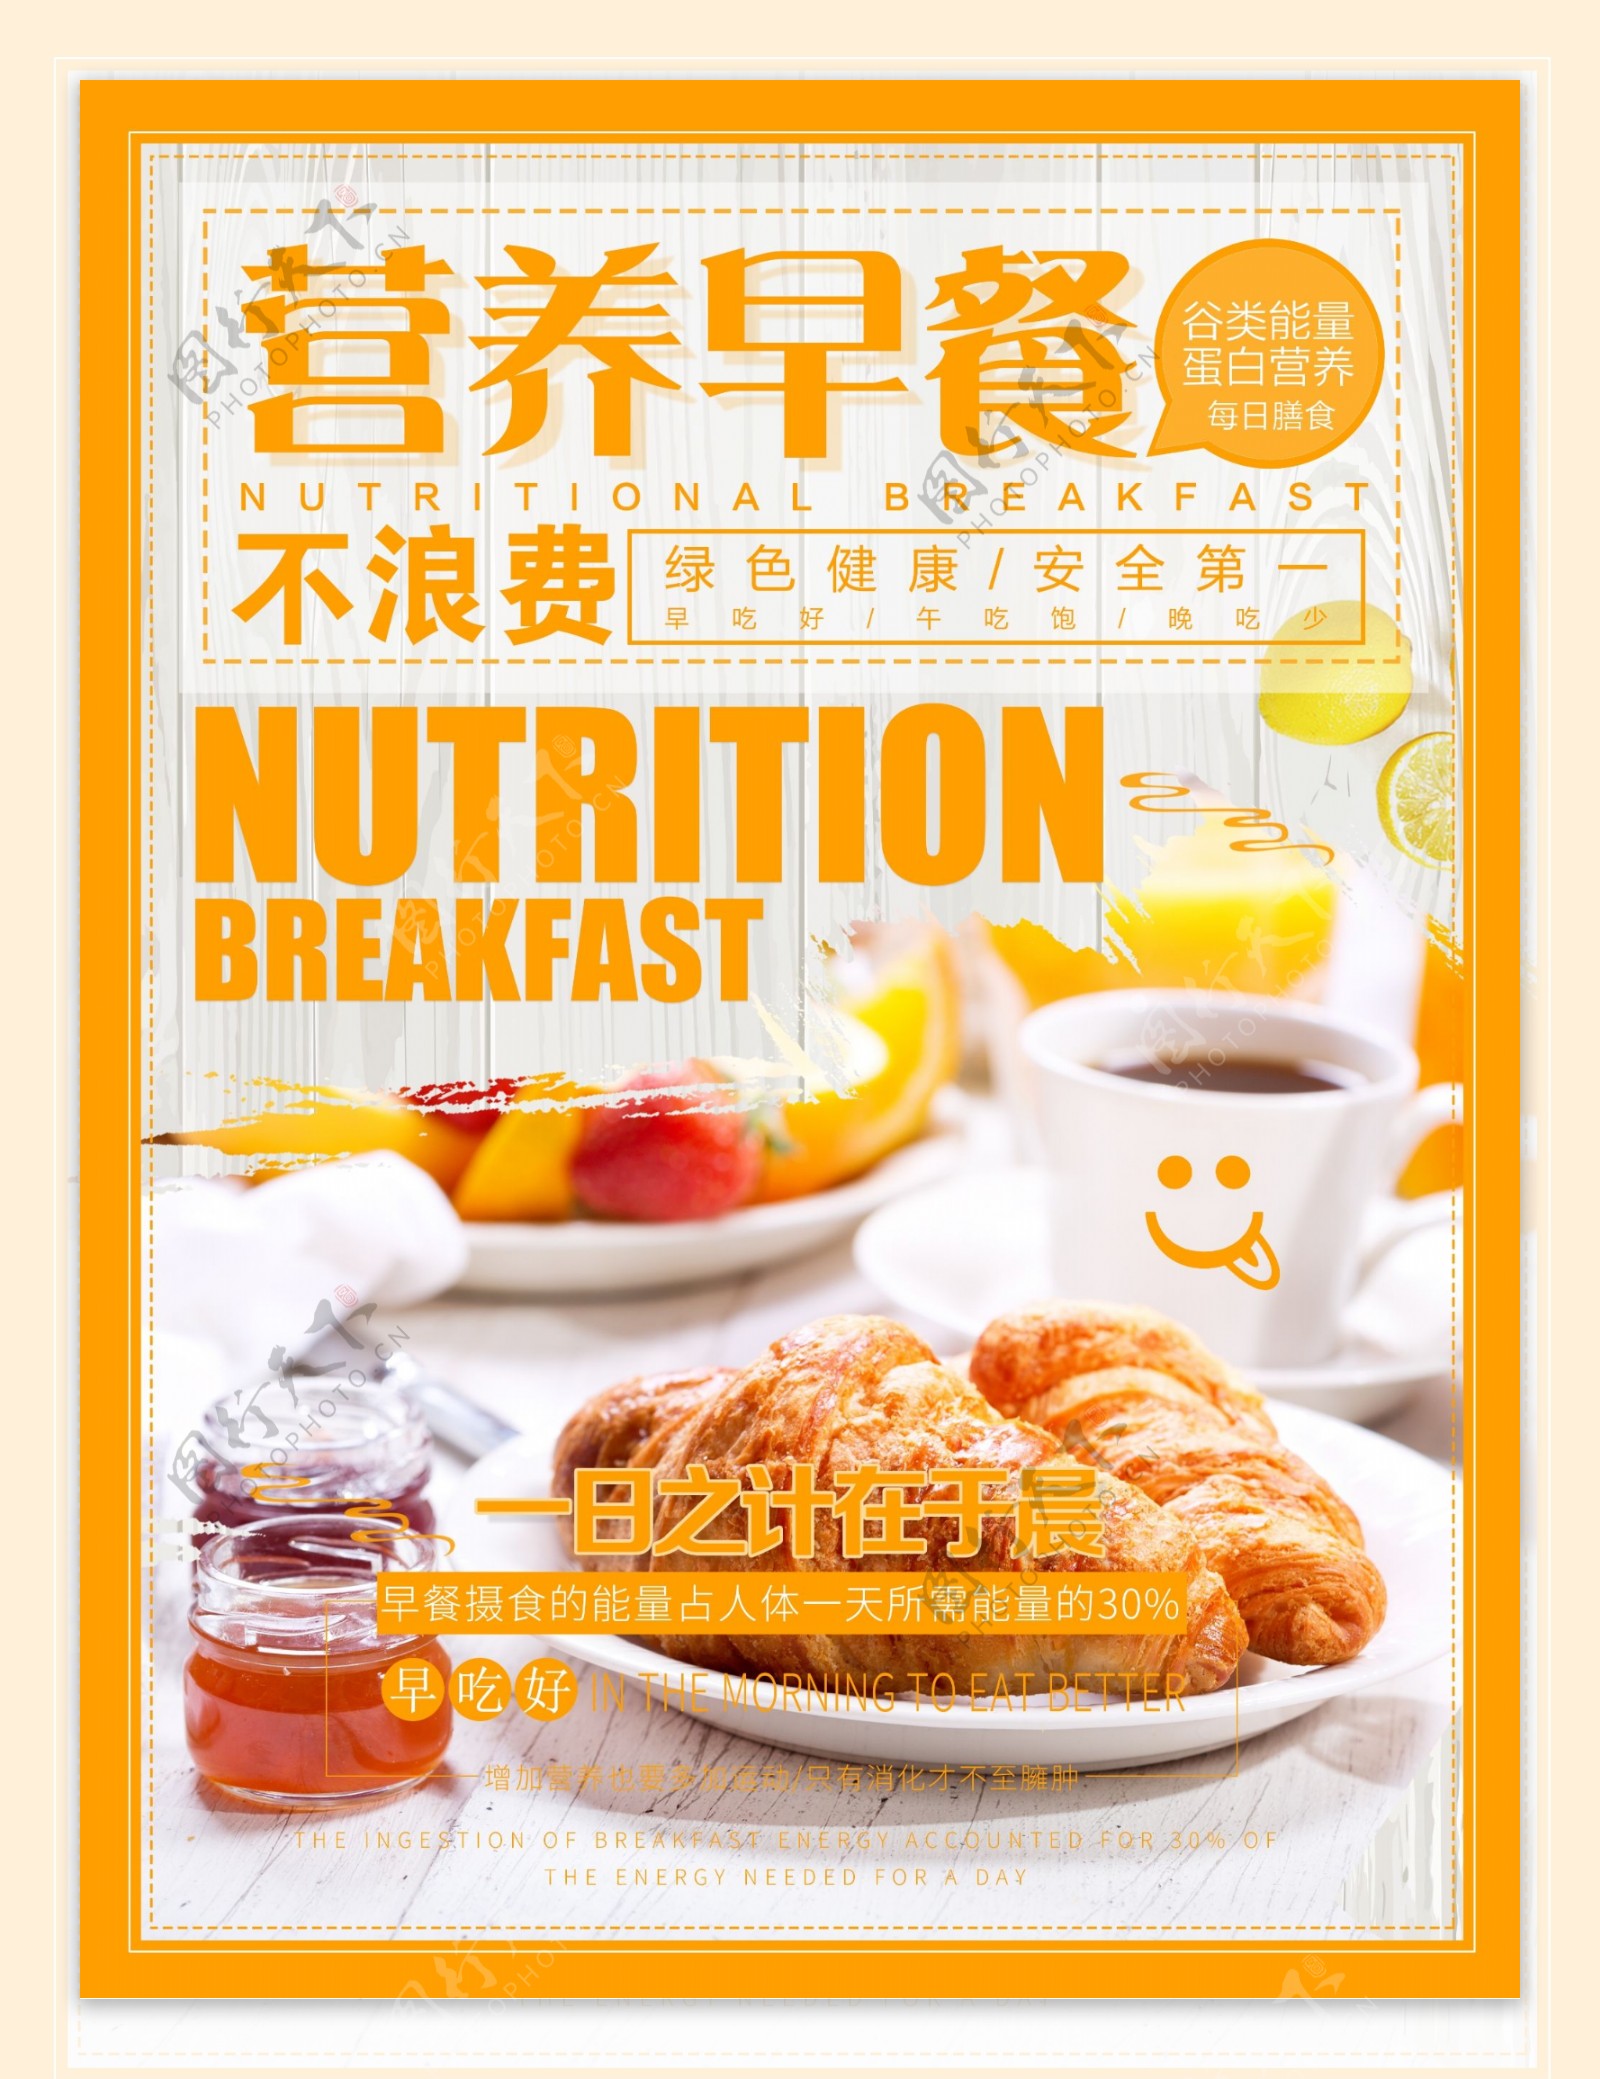 一日之计在于晨营养早餐要吃好早餐海报设计